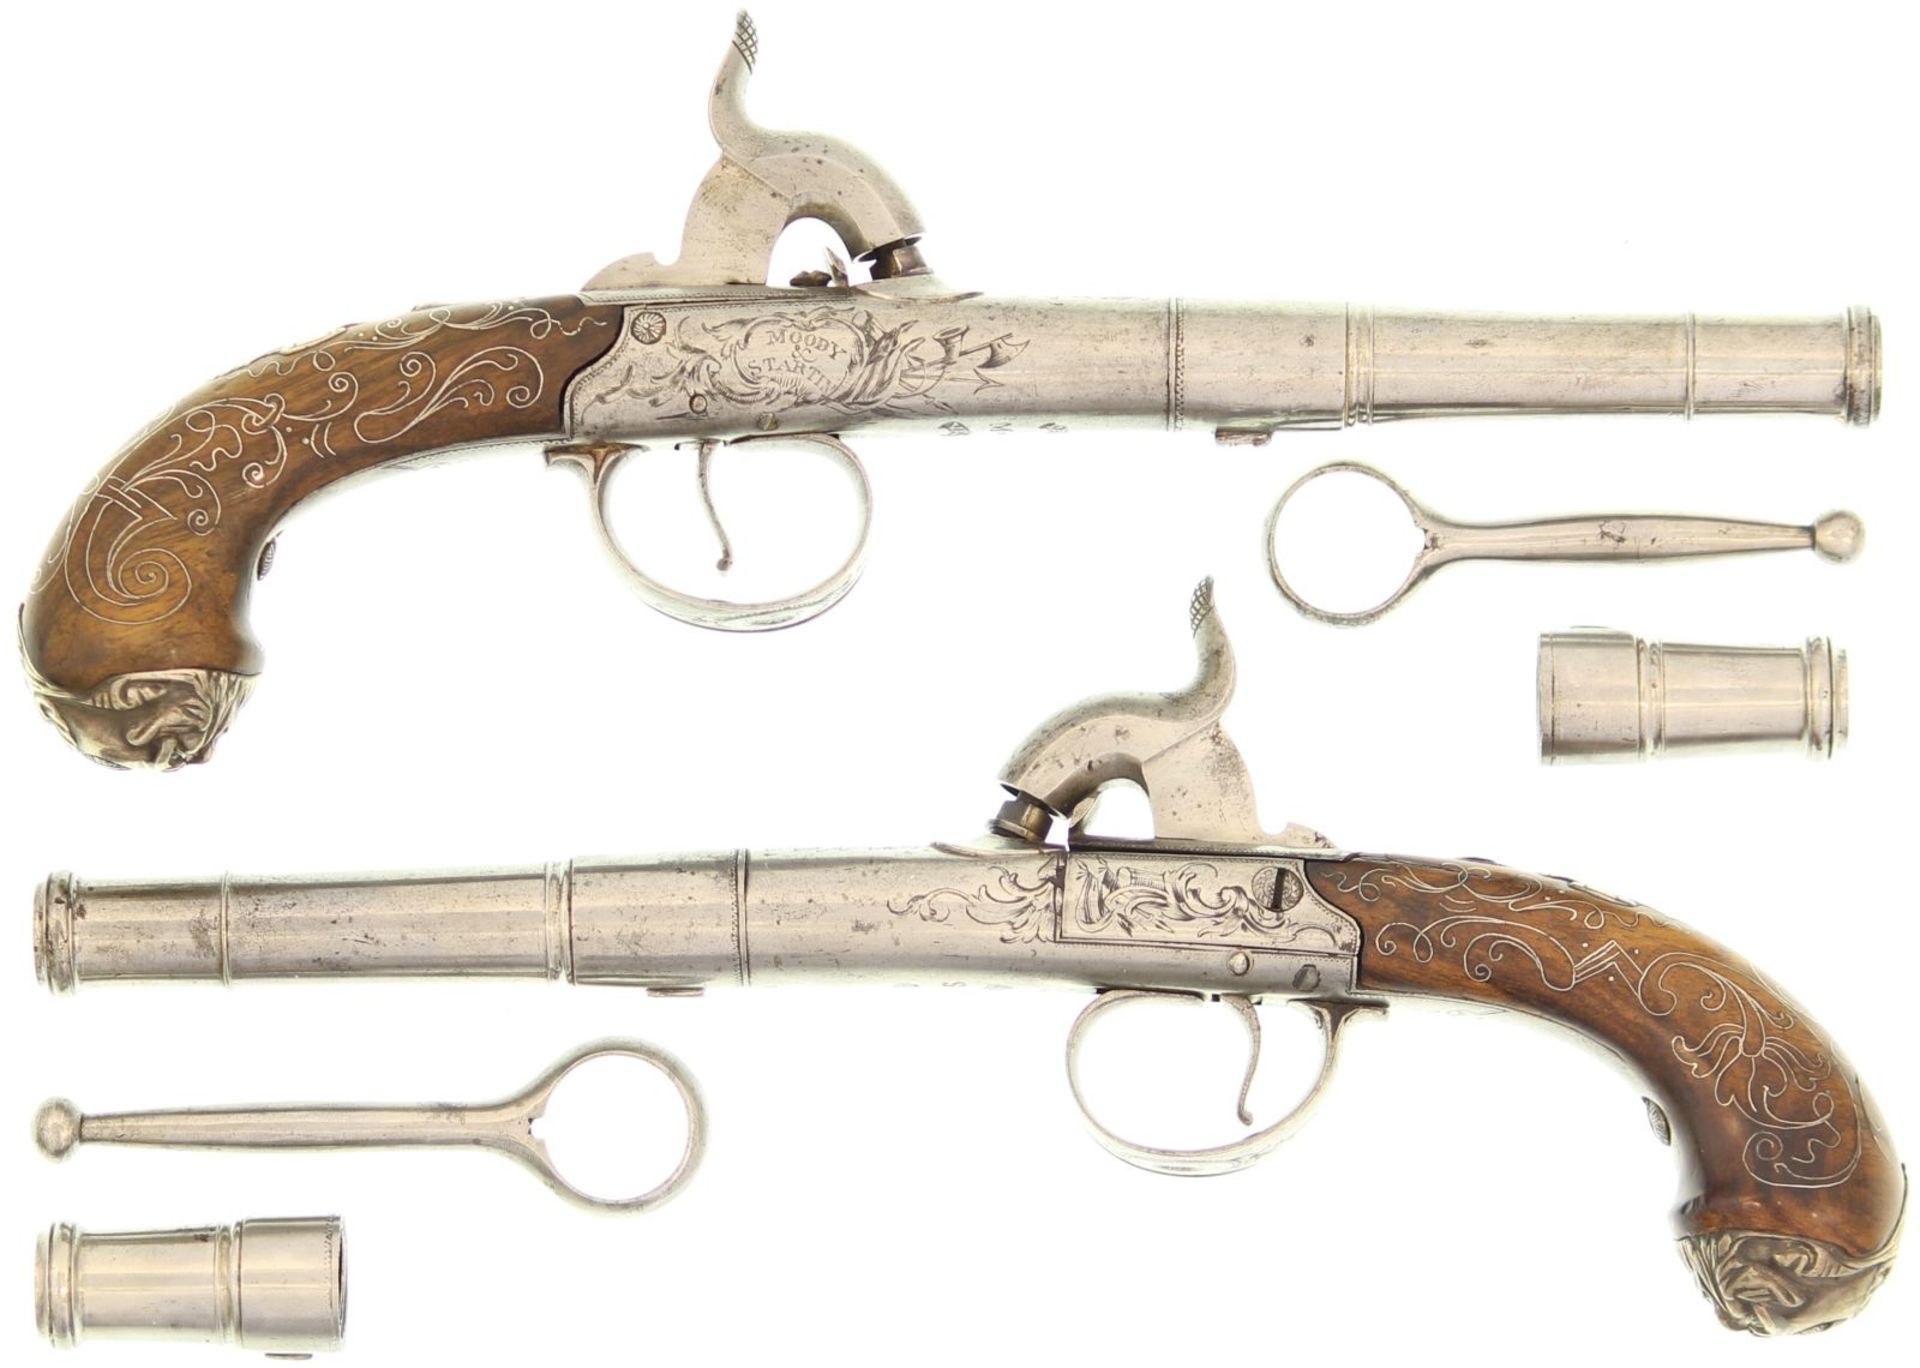 Perkussionspistolen Paar, Moody  & Startin, zierlich gearbeitete Reisepistolen im Kal. 10mm. Rundes,